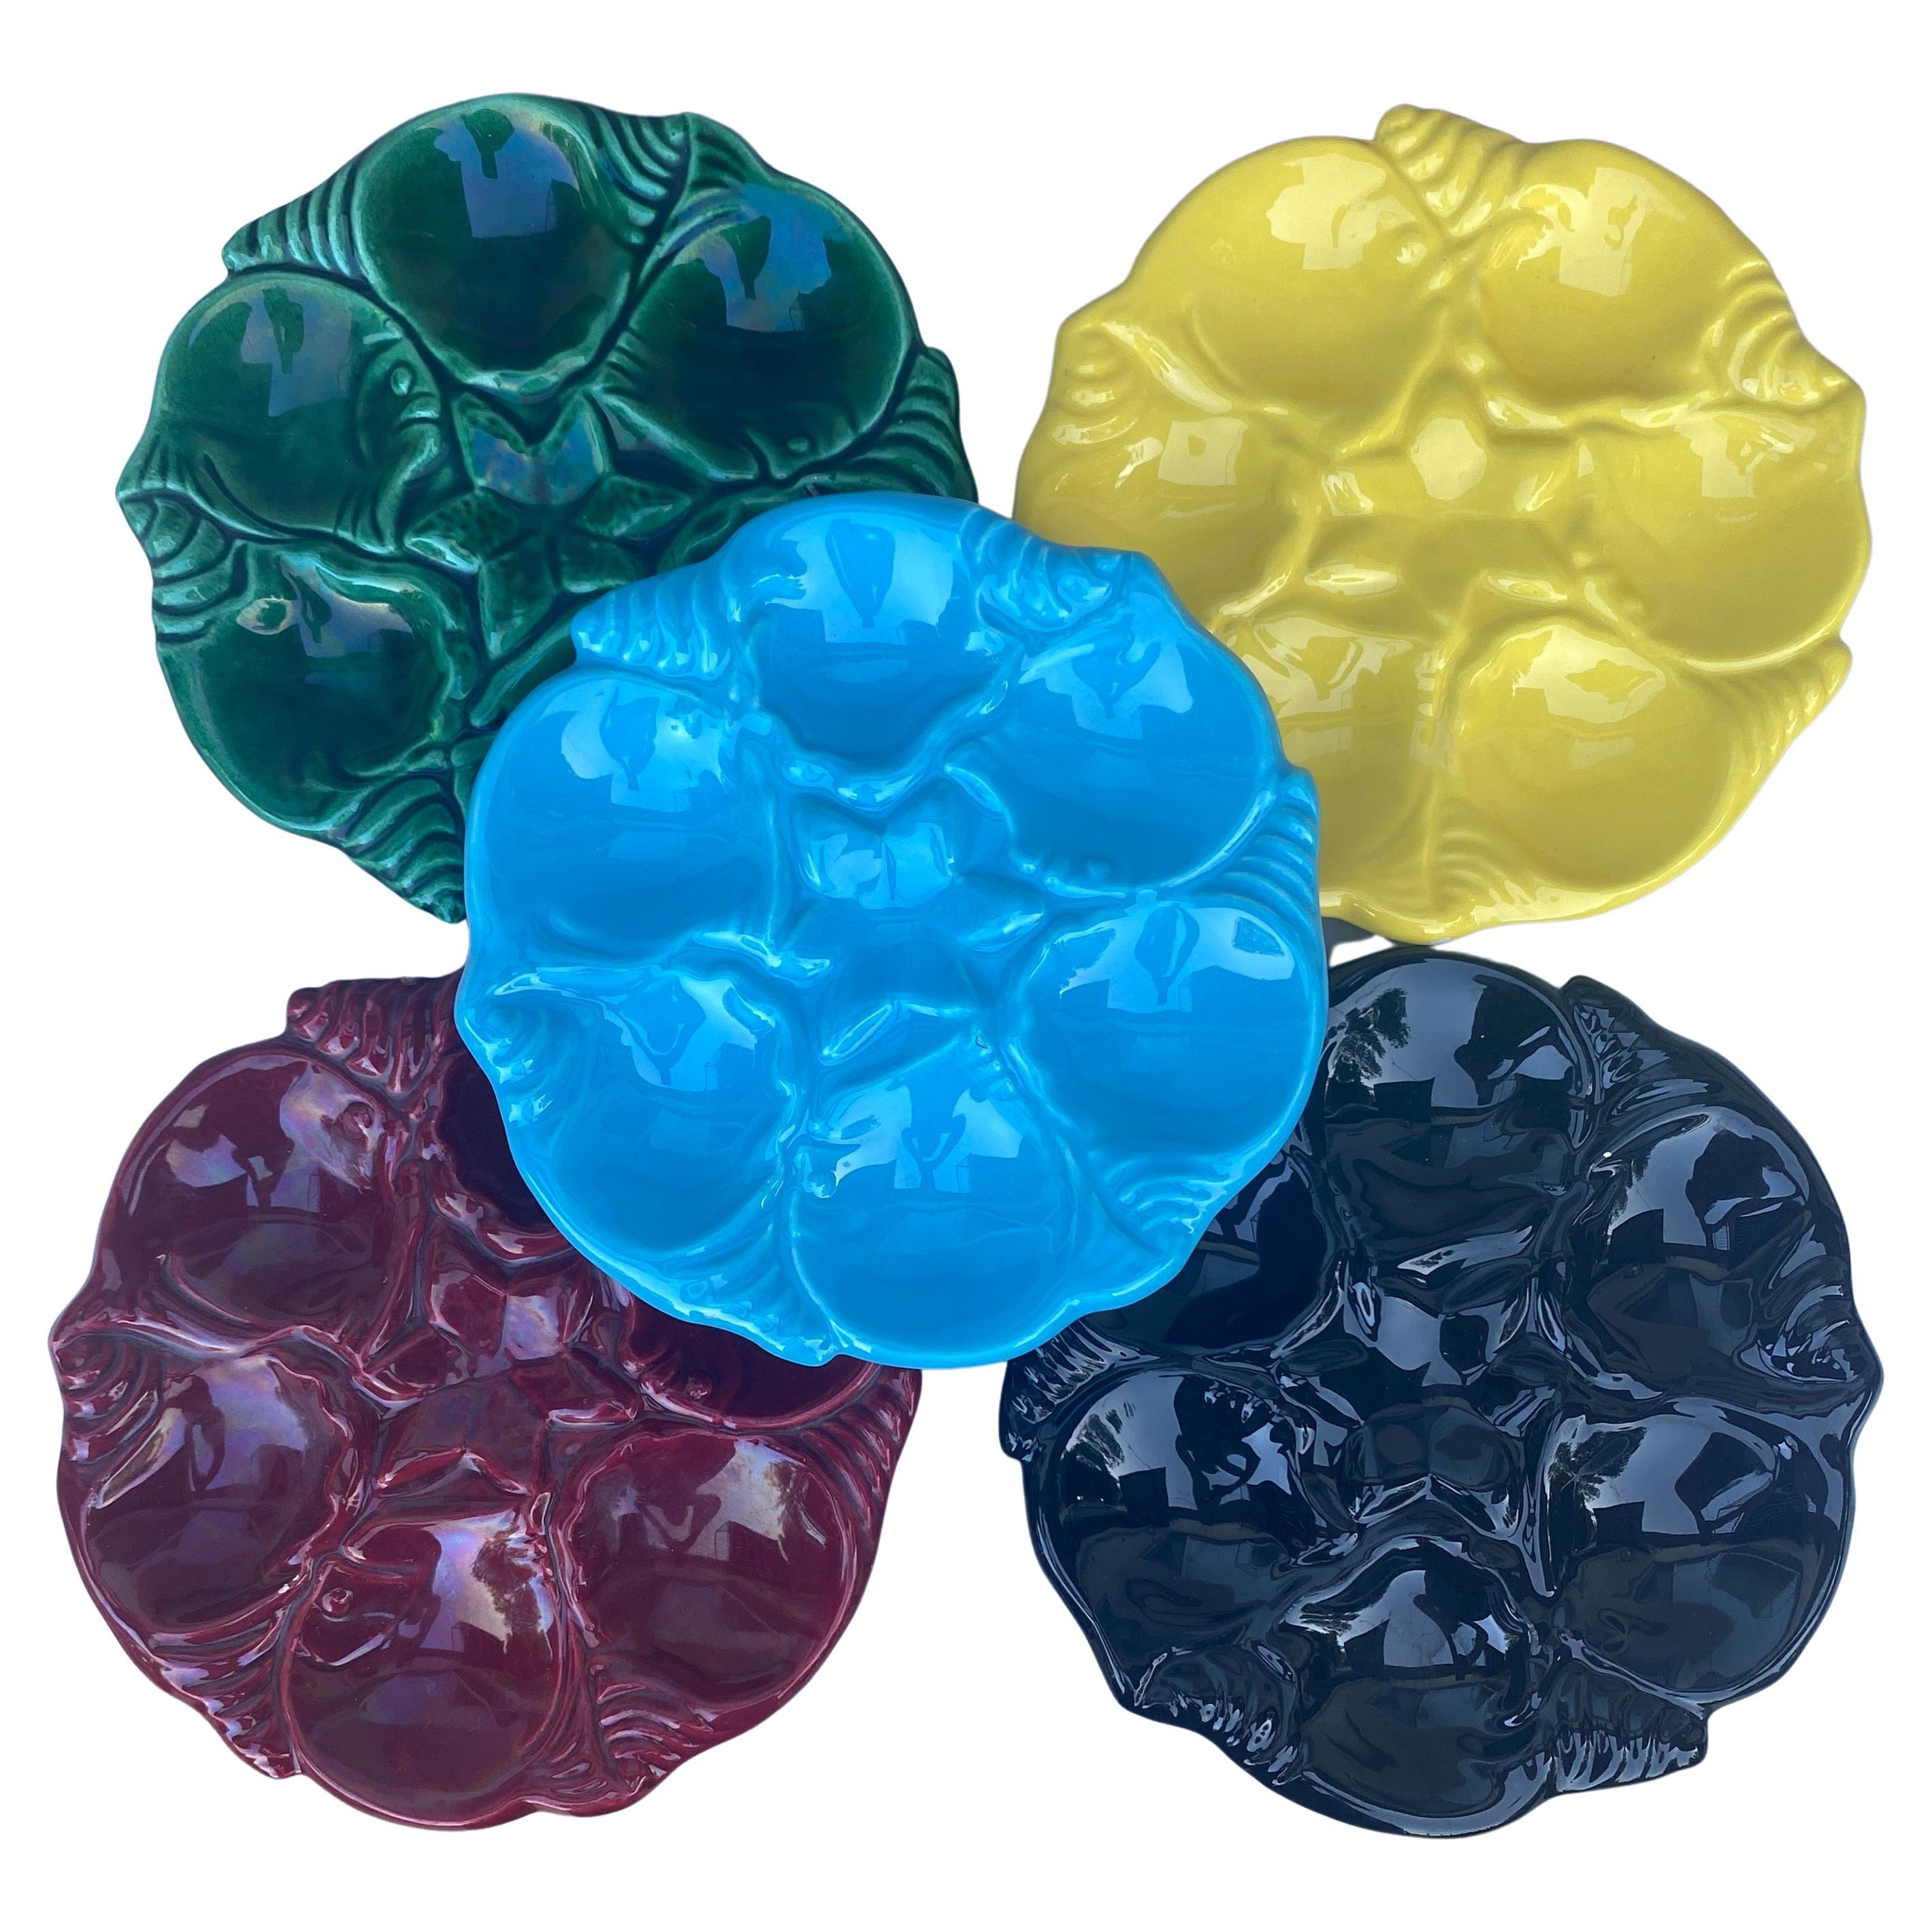 Keramischer Austernteller Vallauris um 1950.
Alle verschiedenen Farben, Platten werden separat verkauft und Farben müssen gewählt werden.
9 Farben verfügbar.
rosa,marineblau,gelb,orange,grün,lila,schwarz,aqua,rot.
